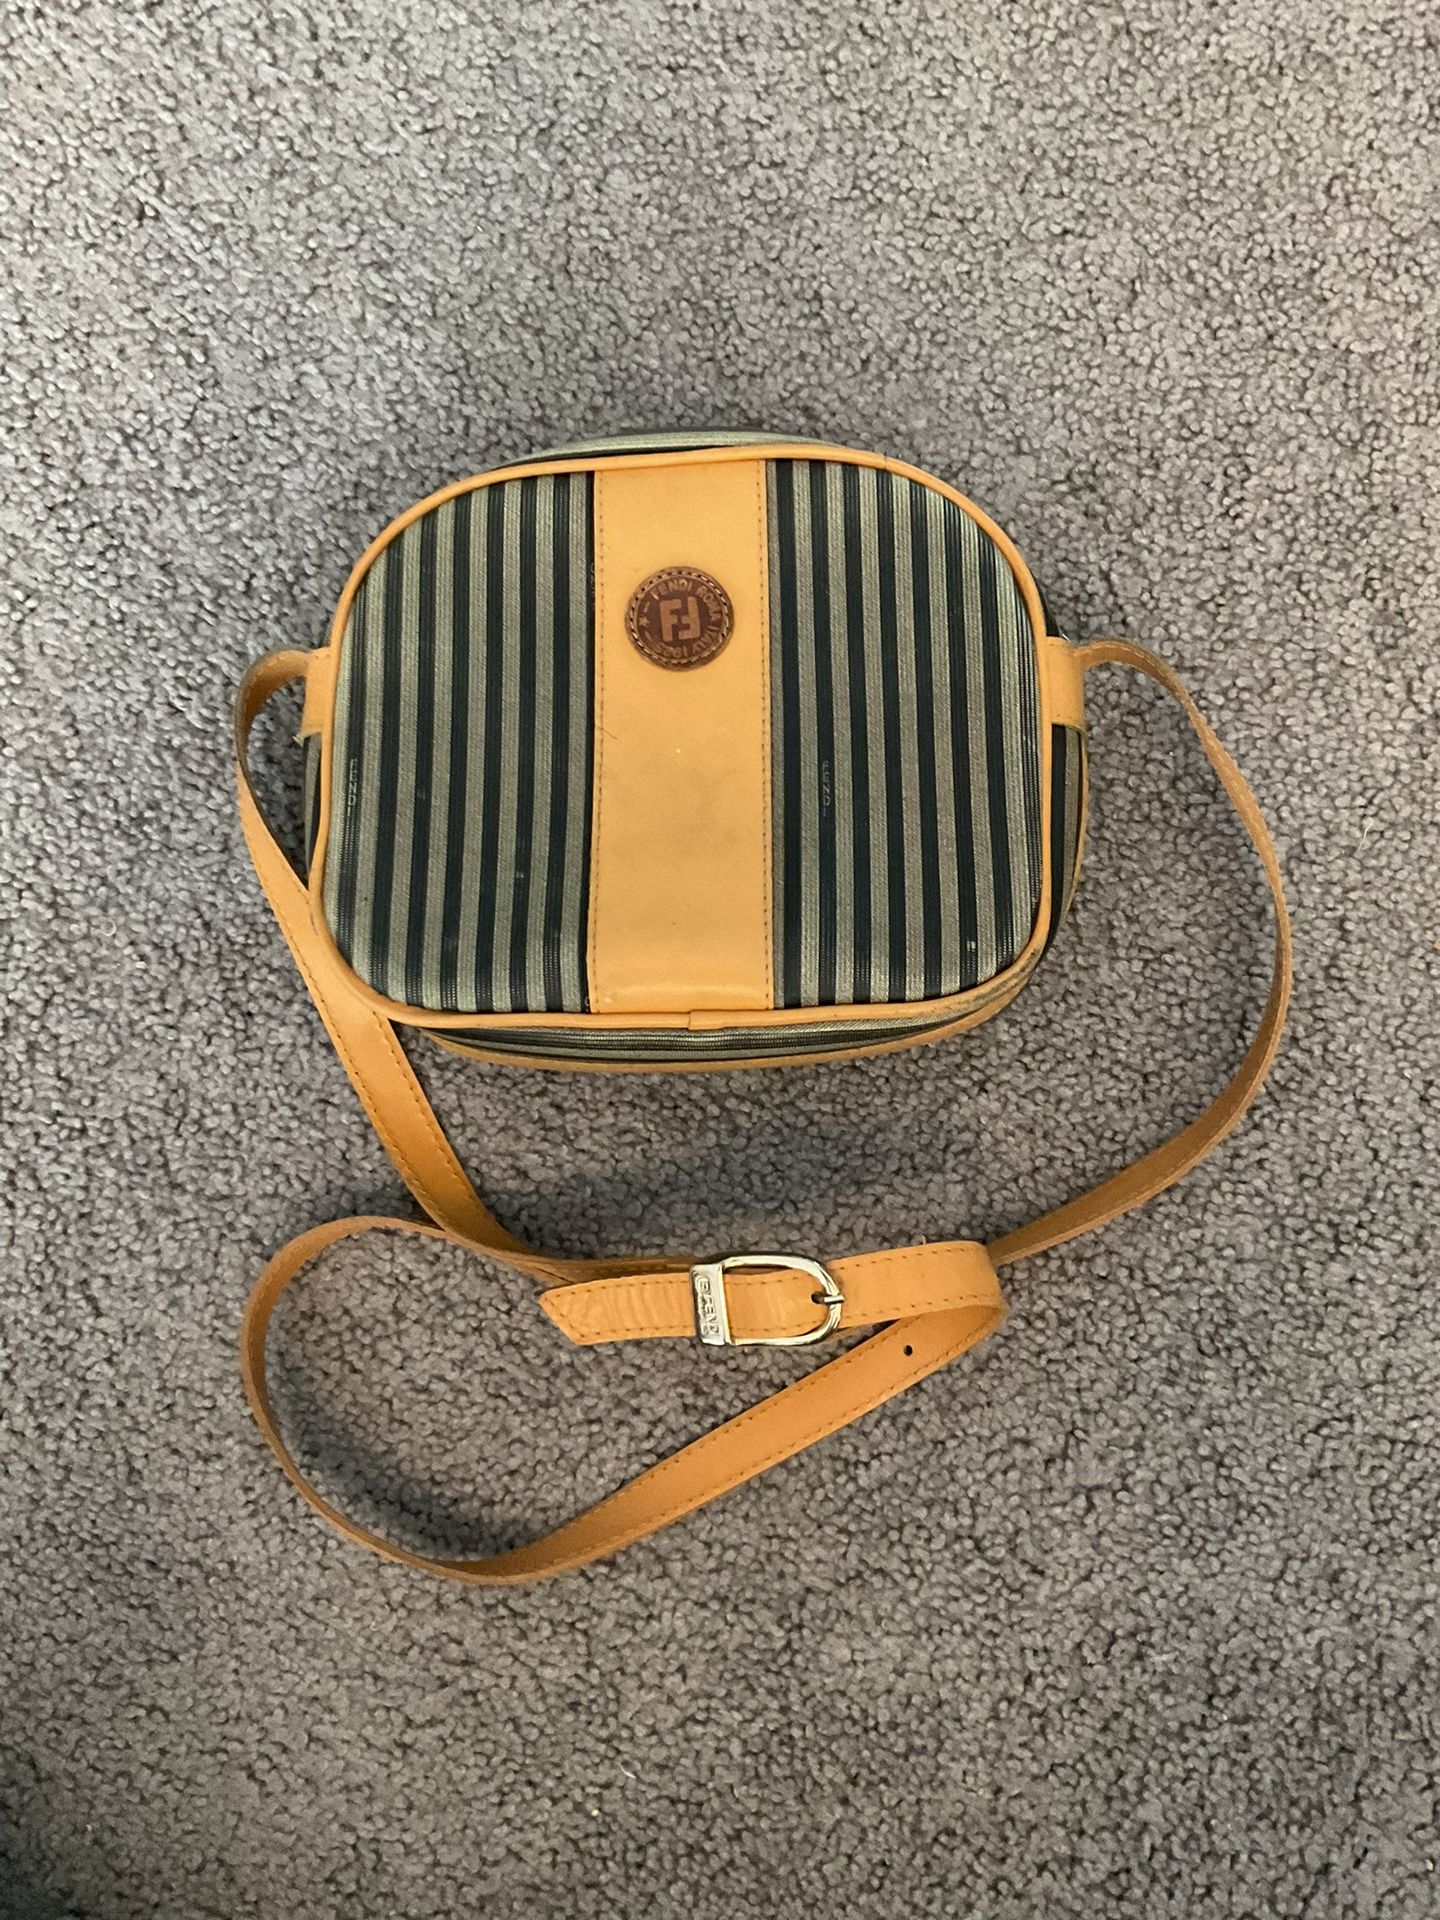 FENDI Vintage Leather Striped Crossbody Shoulder Purse Handbag Bag for Sale  in Bayport, NY - OfferUp